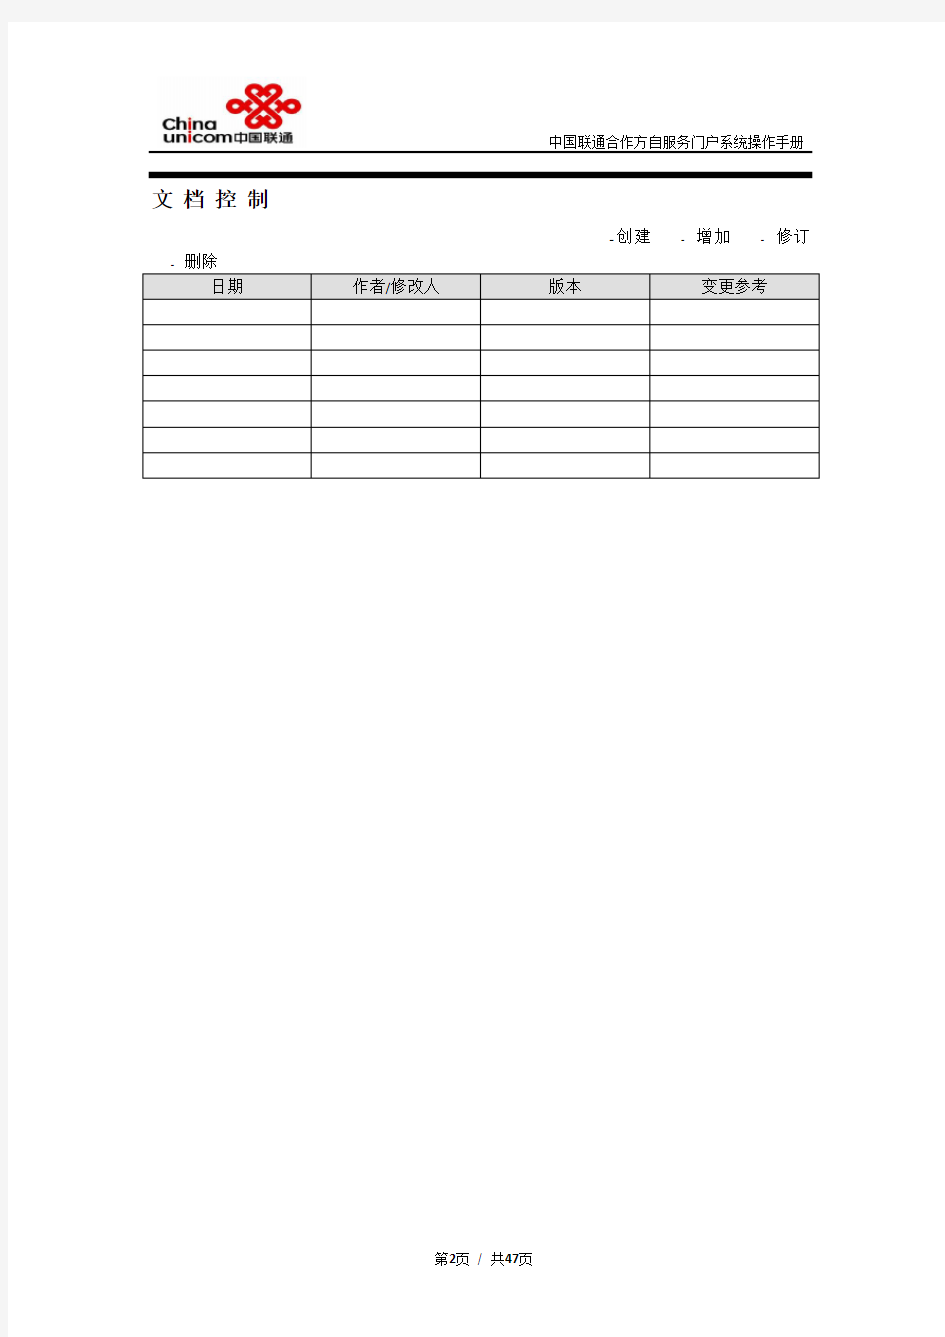 (完整版)中国联通合作方自服务门户系统操作手册-合作方人员操作V_1.0